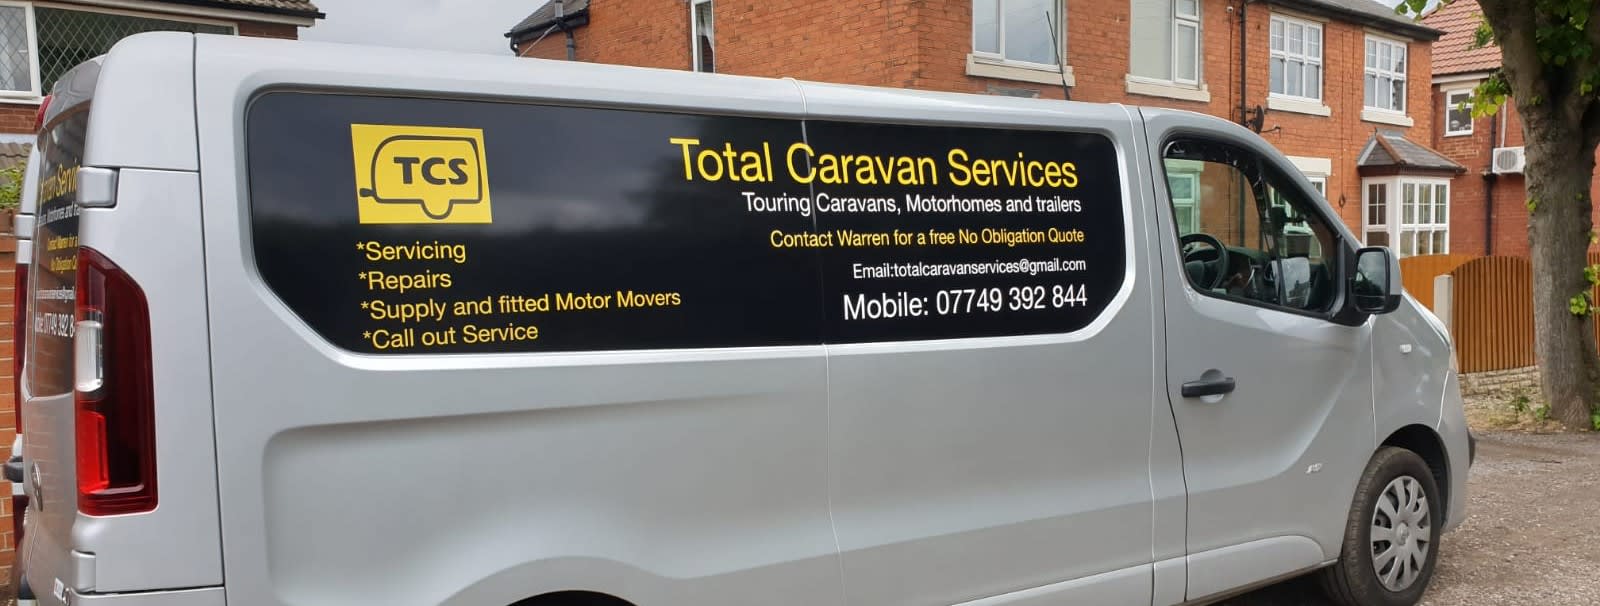 Images Total Caravan Services